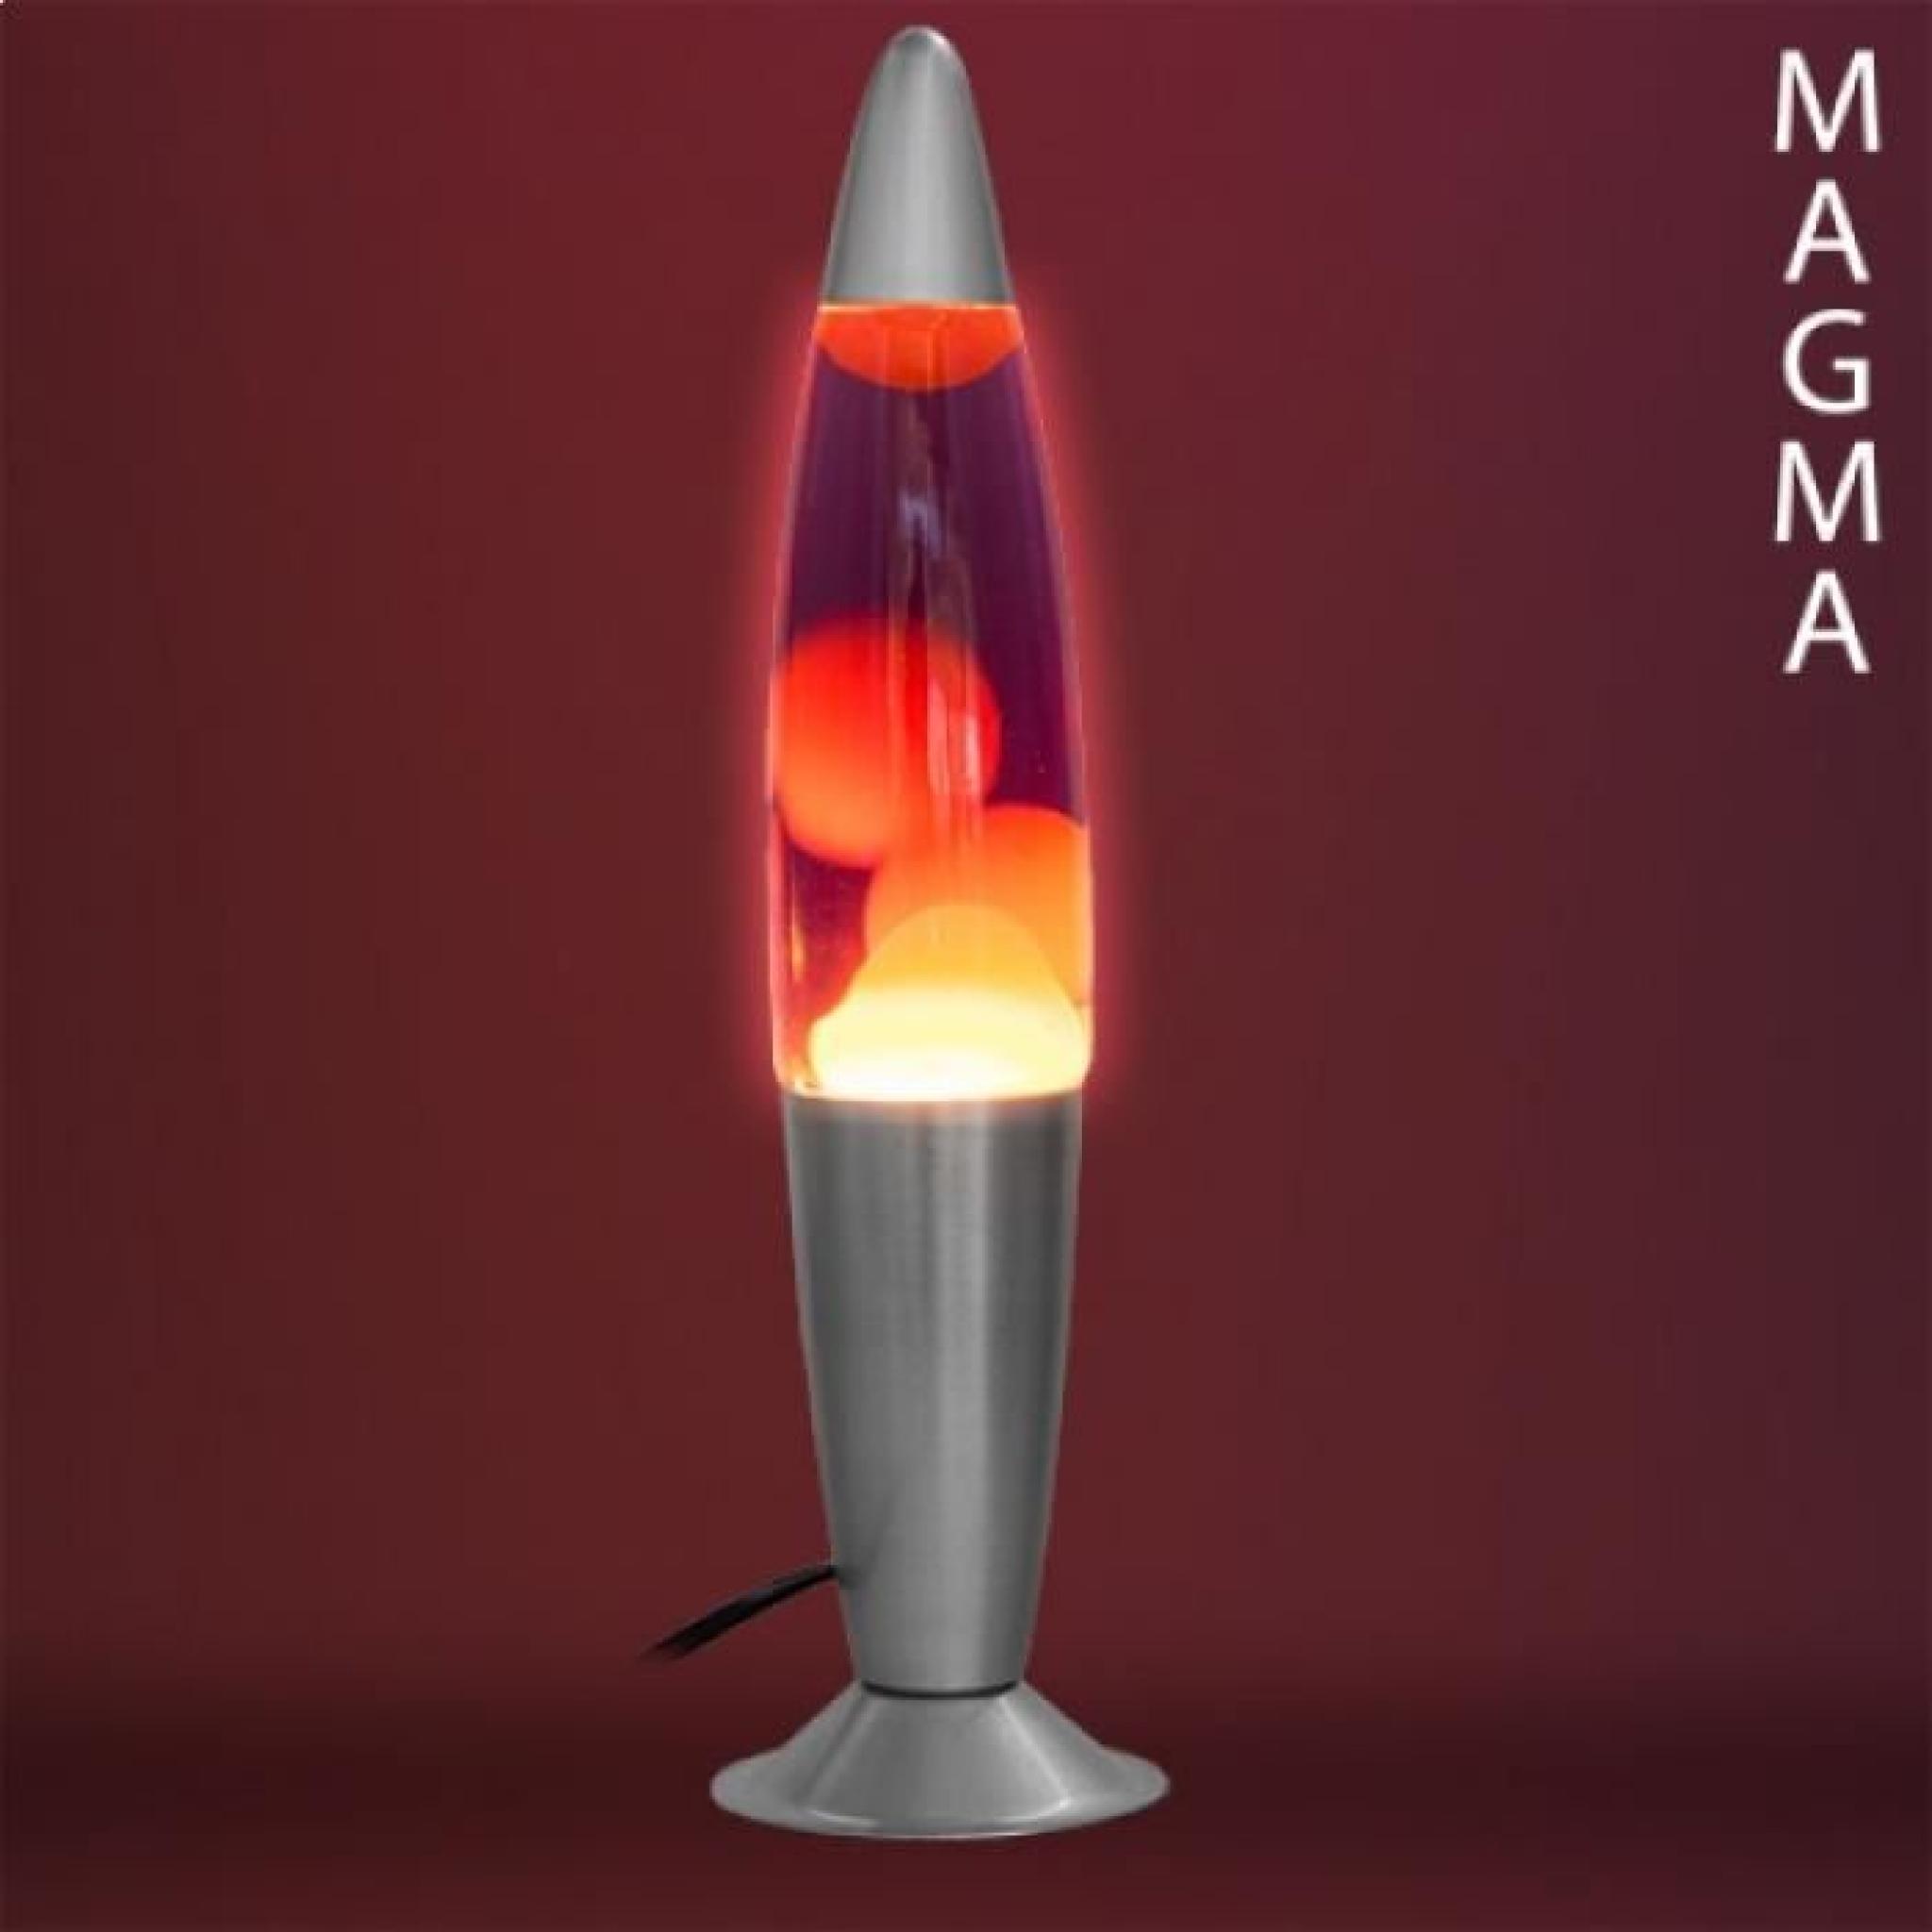 Lampe à Lave Magma fusée vert pas cher